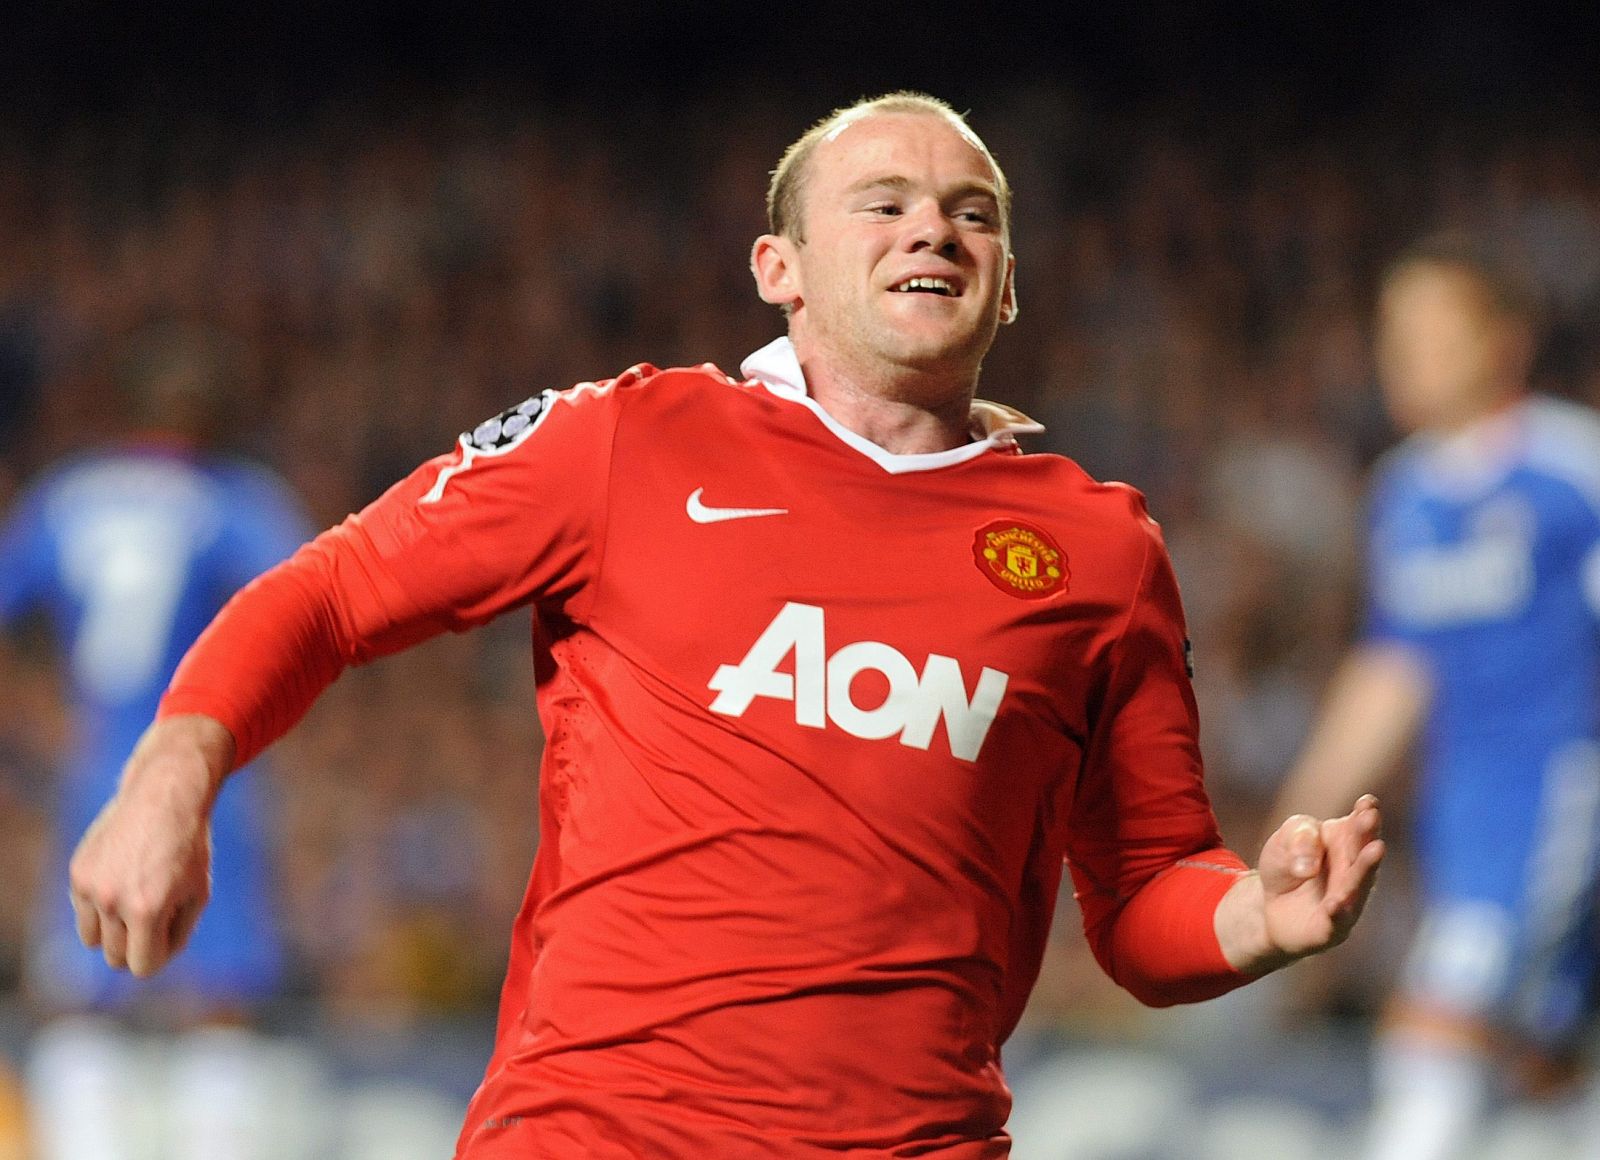 El jugador del Manchester United, Wayne Rooney.